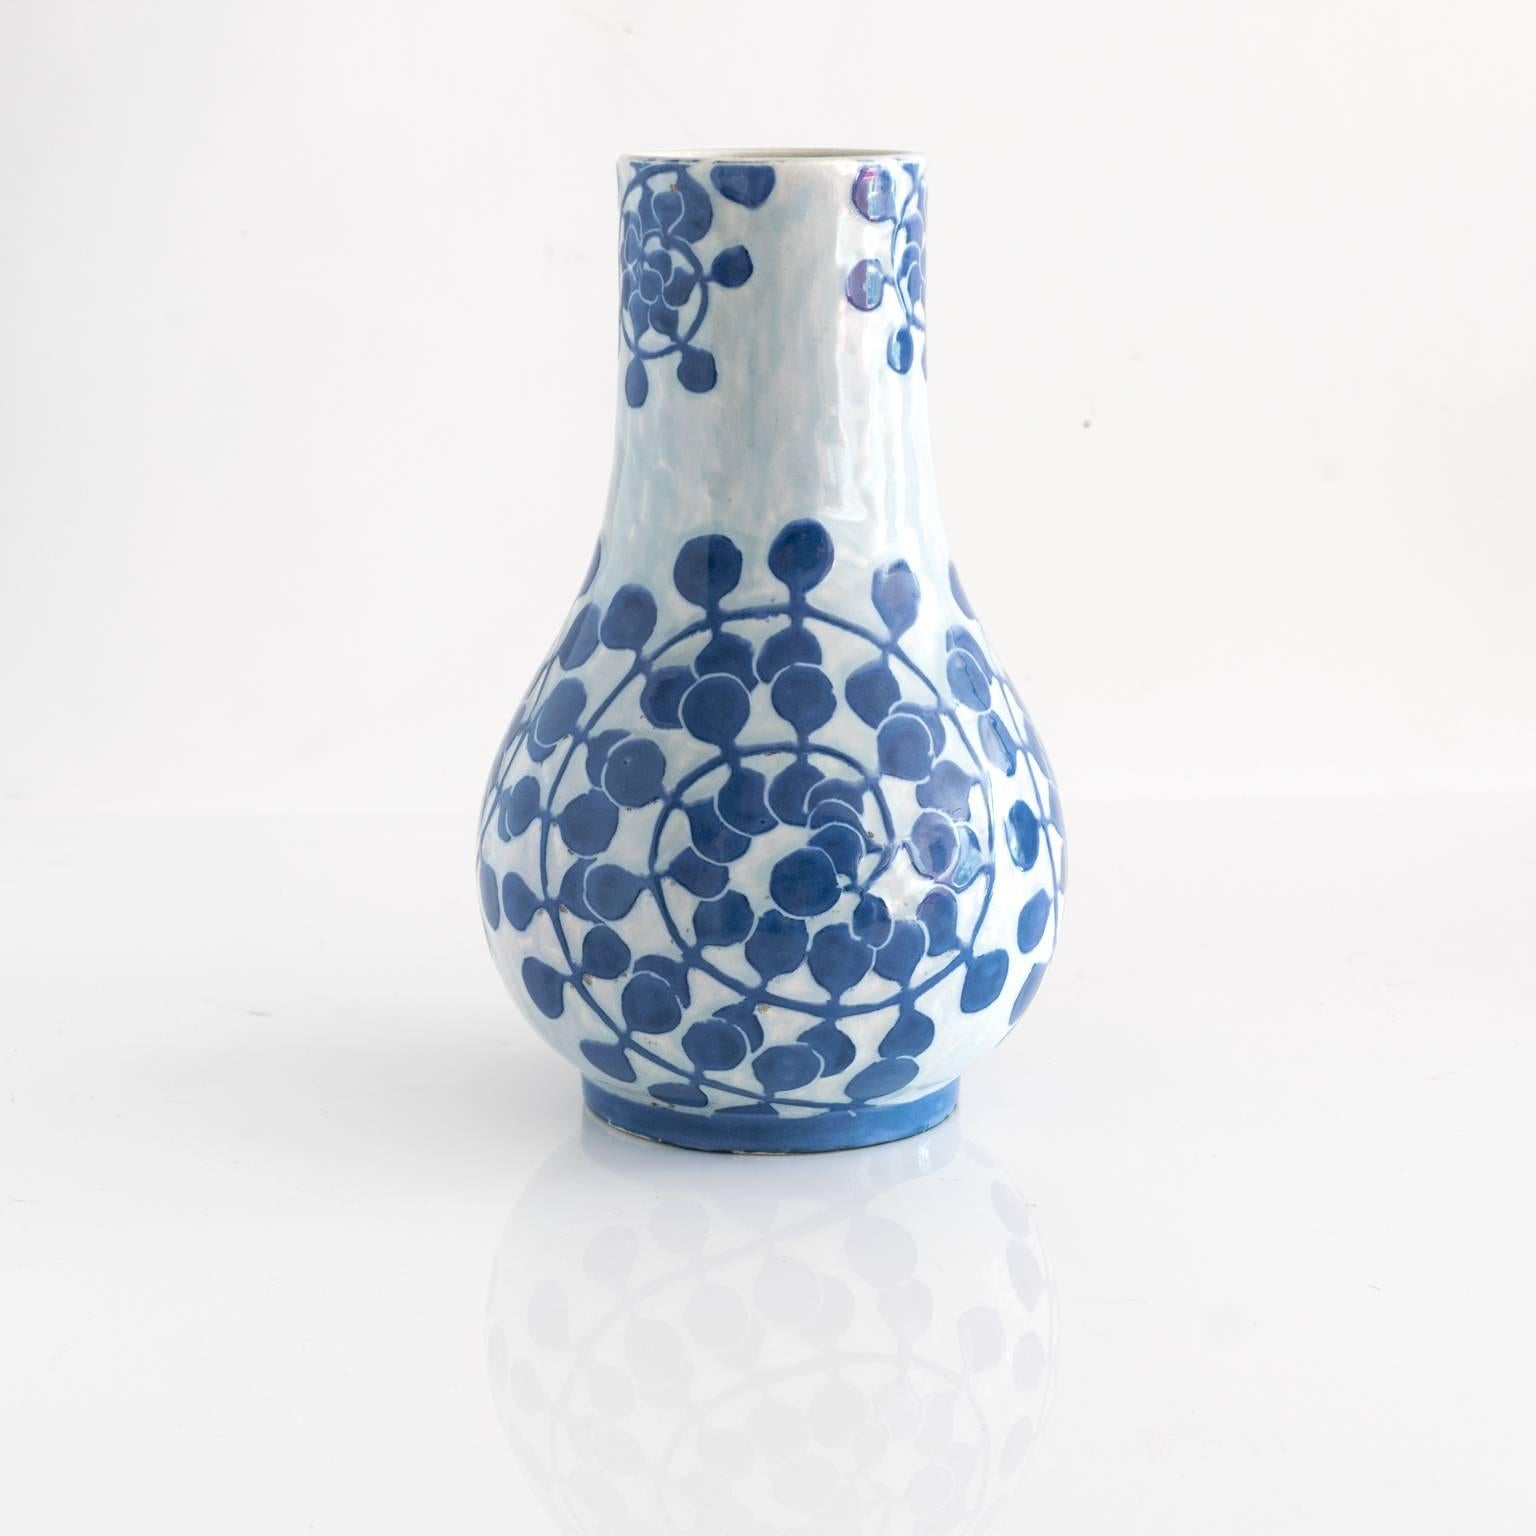 Un vase en céramique de Josef Ekberg pour Gustavsberg avec un motif de vigne en spirale. Il s'agit d'une pièce rare et très ancienne datée de 1902,

Mesures : Hauteur 9